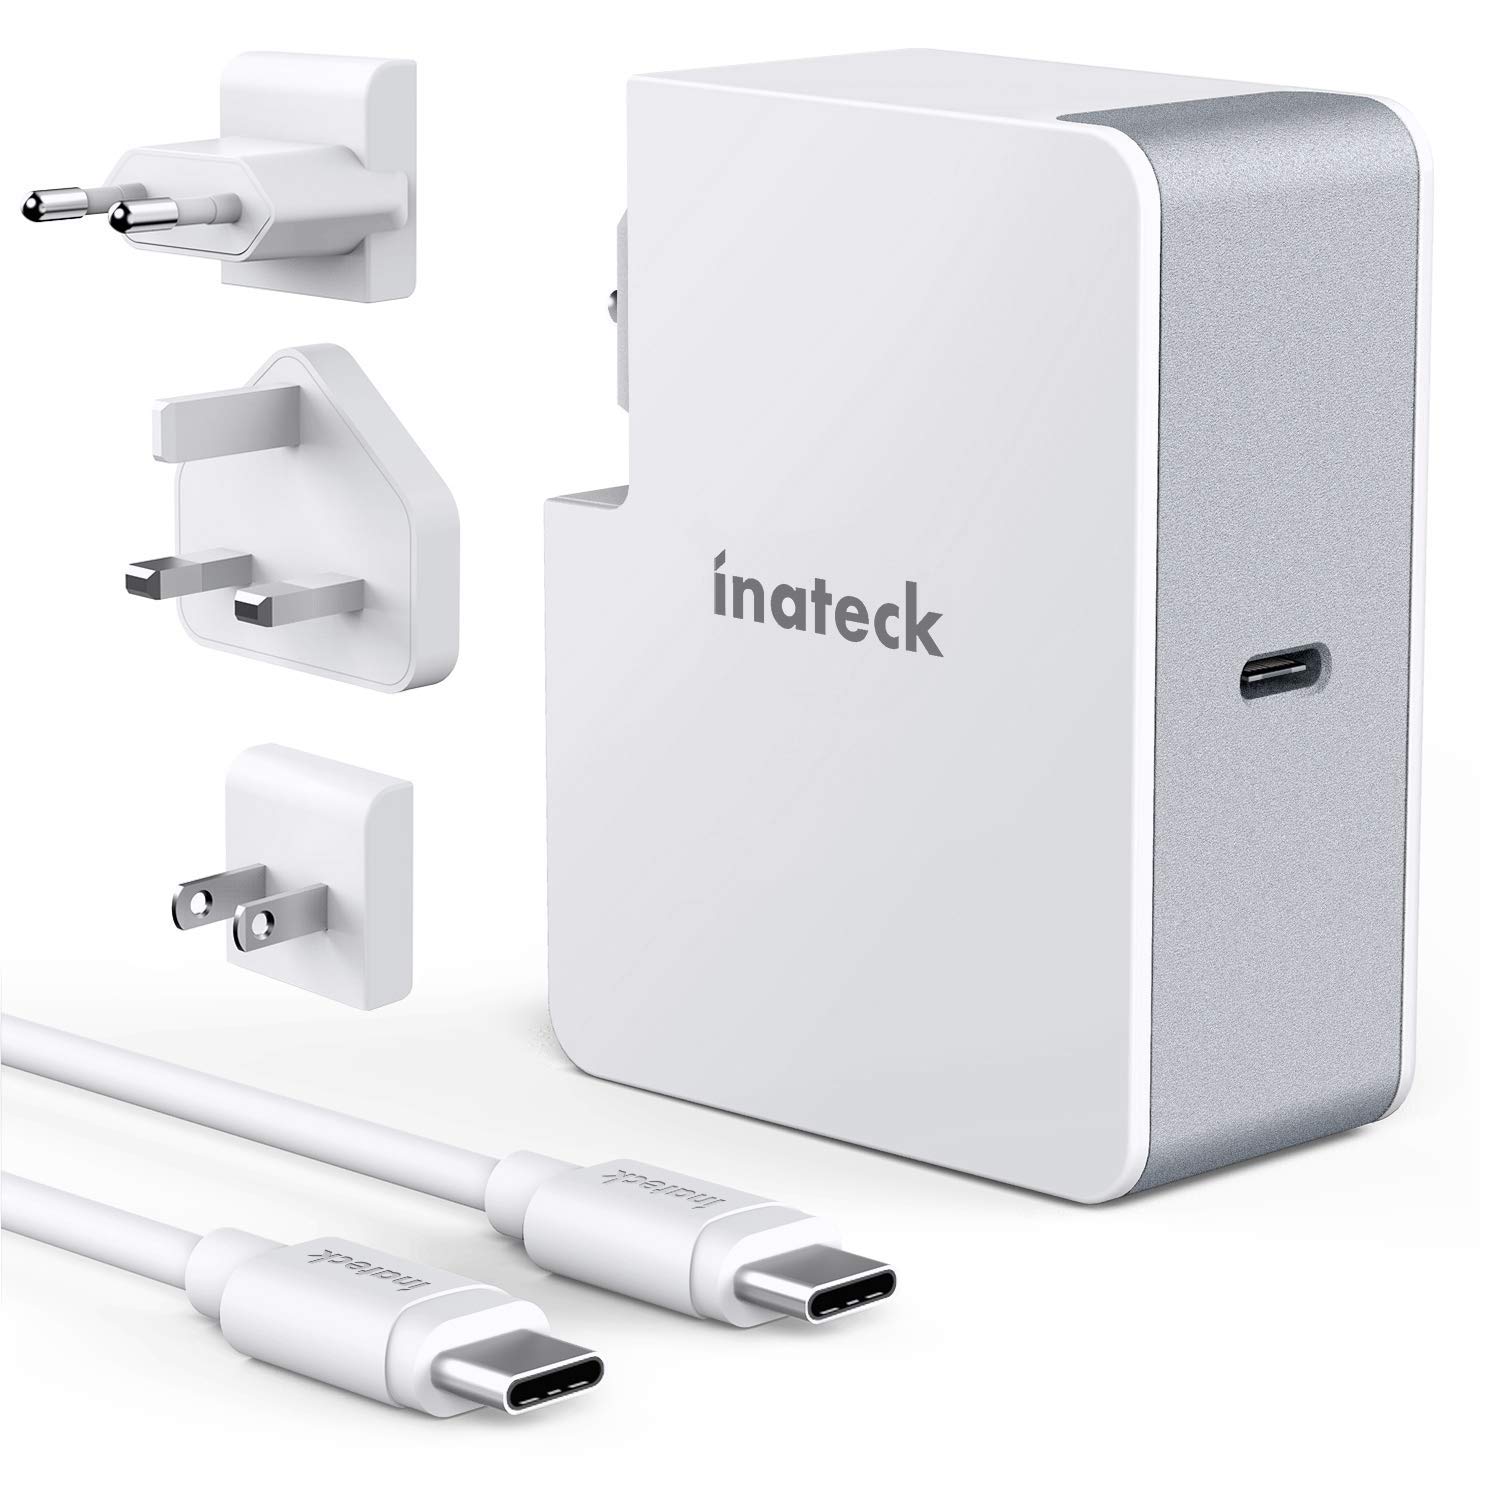 Inateck 60W USB C Ladegerät mit 2 m USB C Kabel, Power Delivery Type C Netzteil für Laptop wie MacBook Pro 2017/2018 und viele weitere USB C Geräte, Weiß